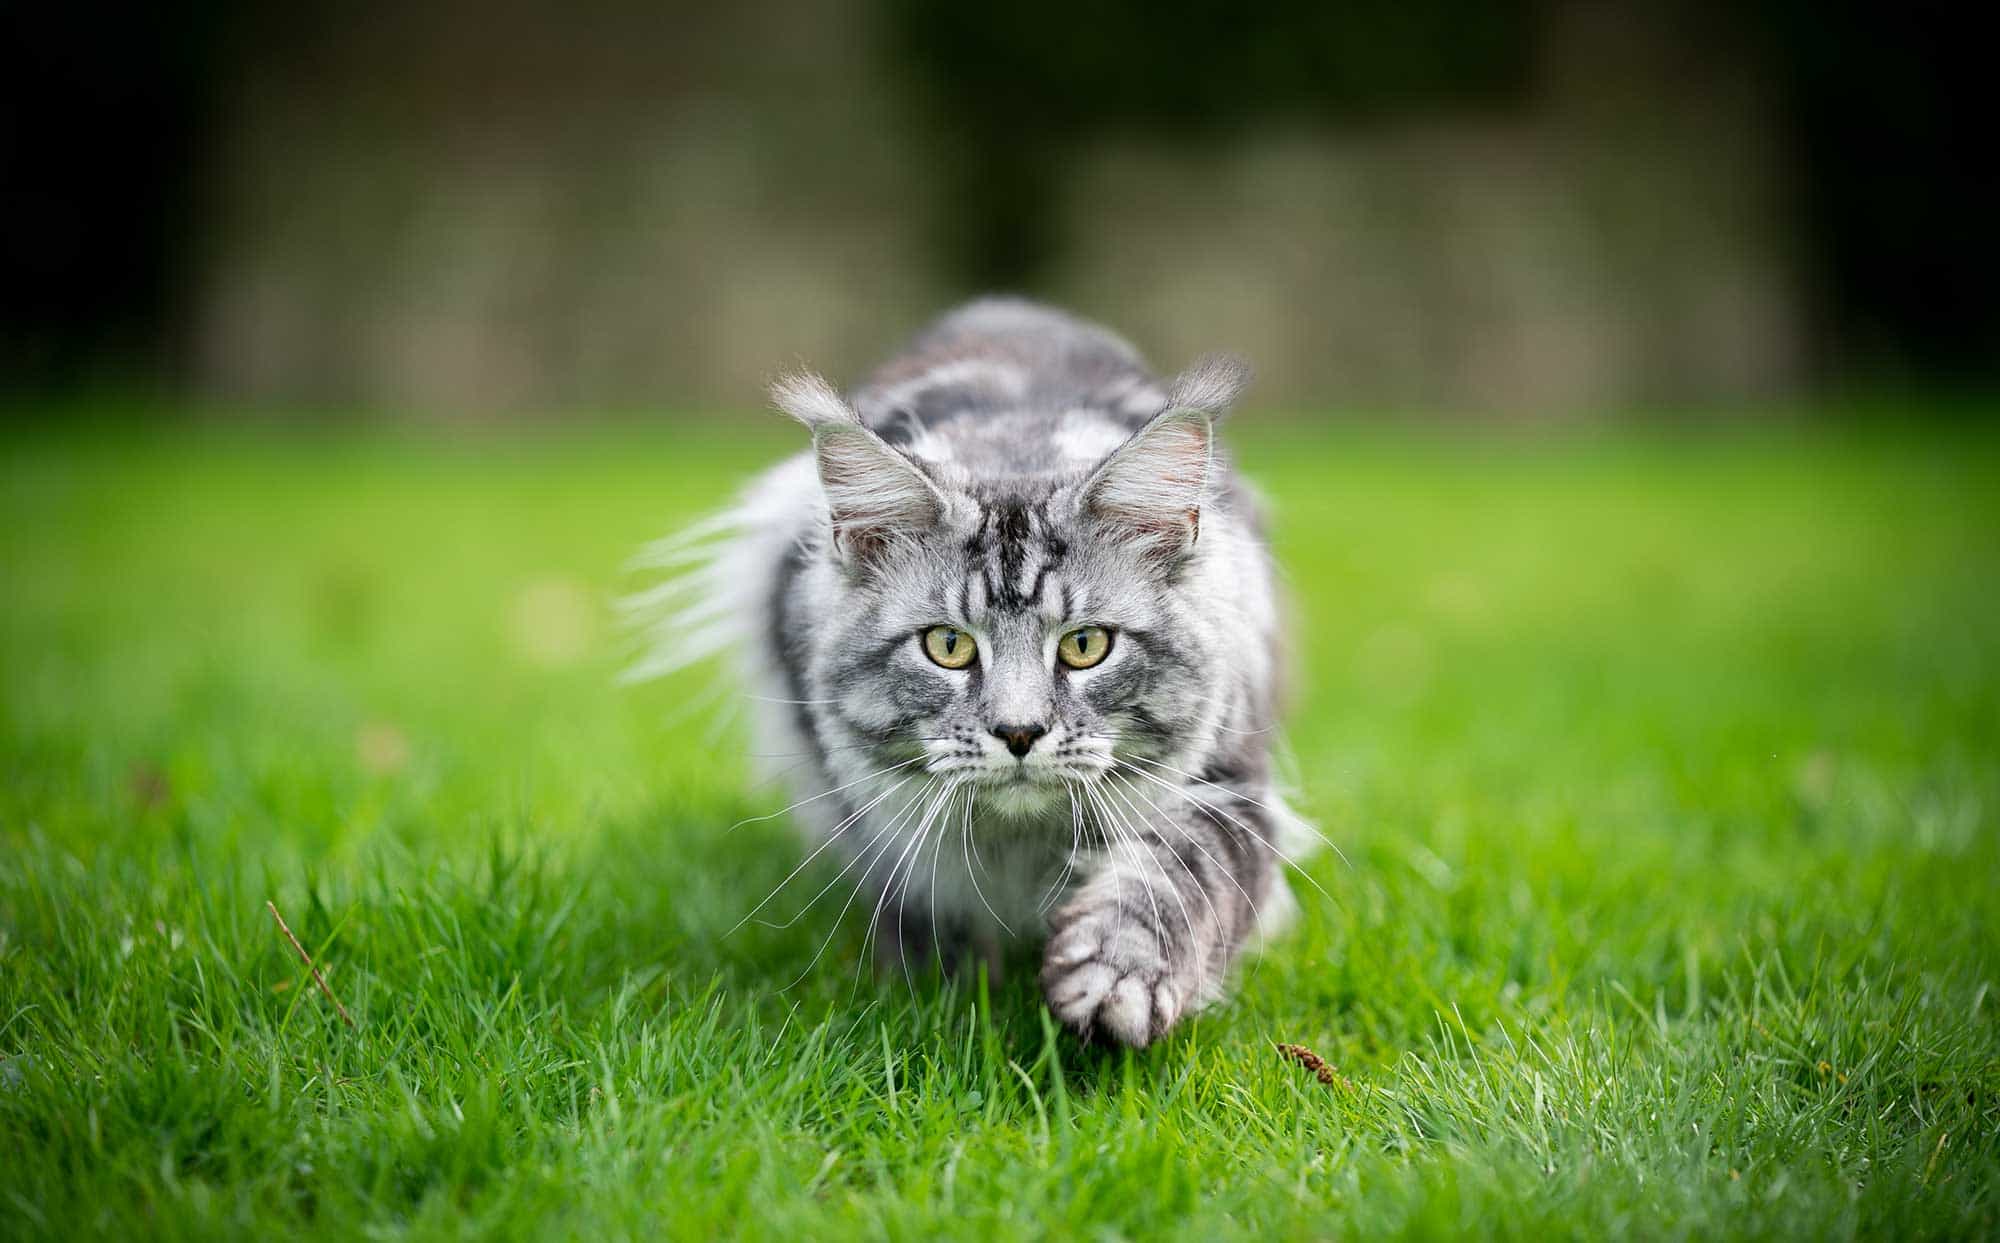 A cat running through a field